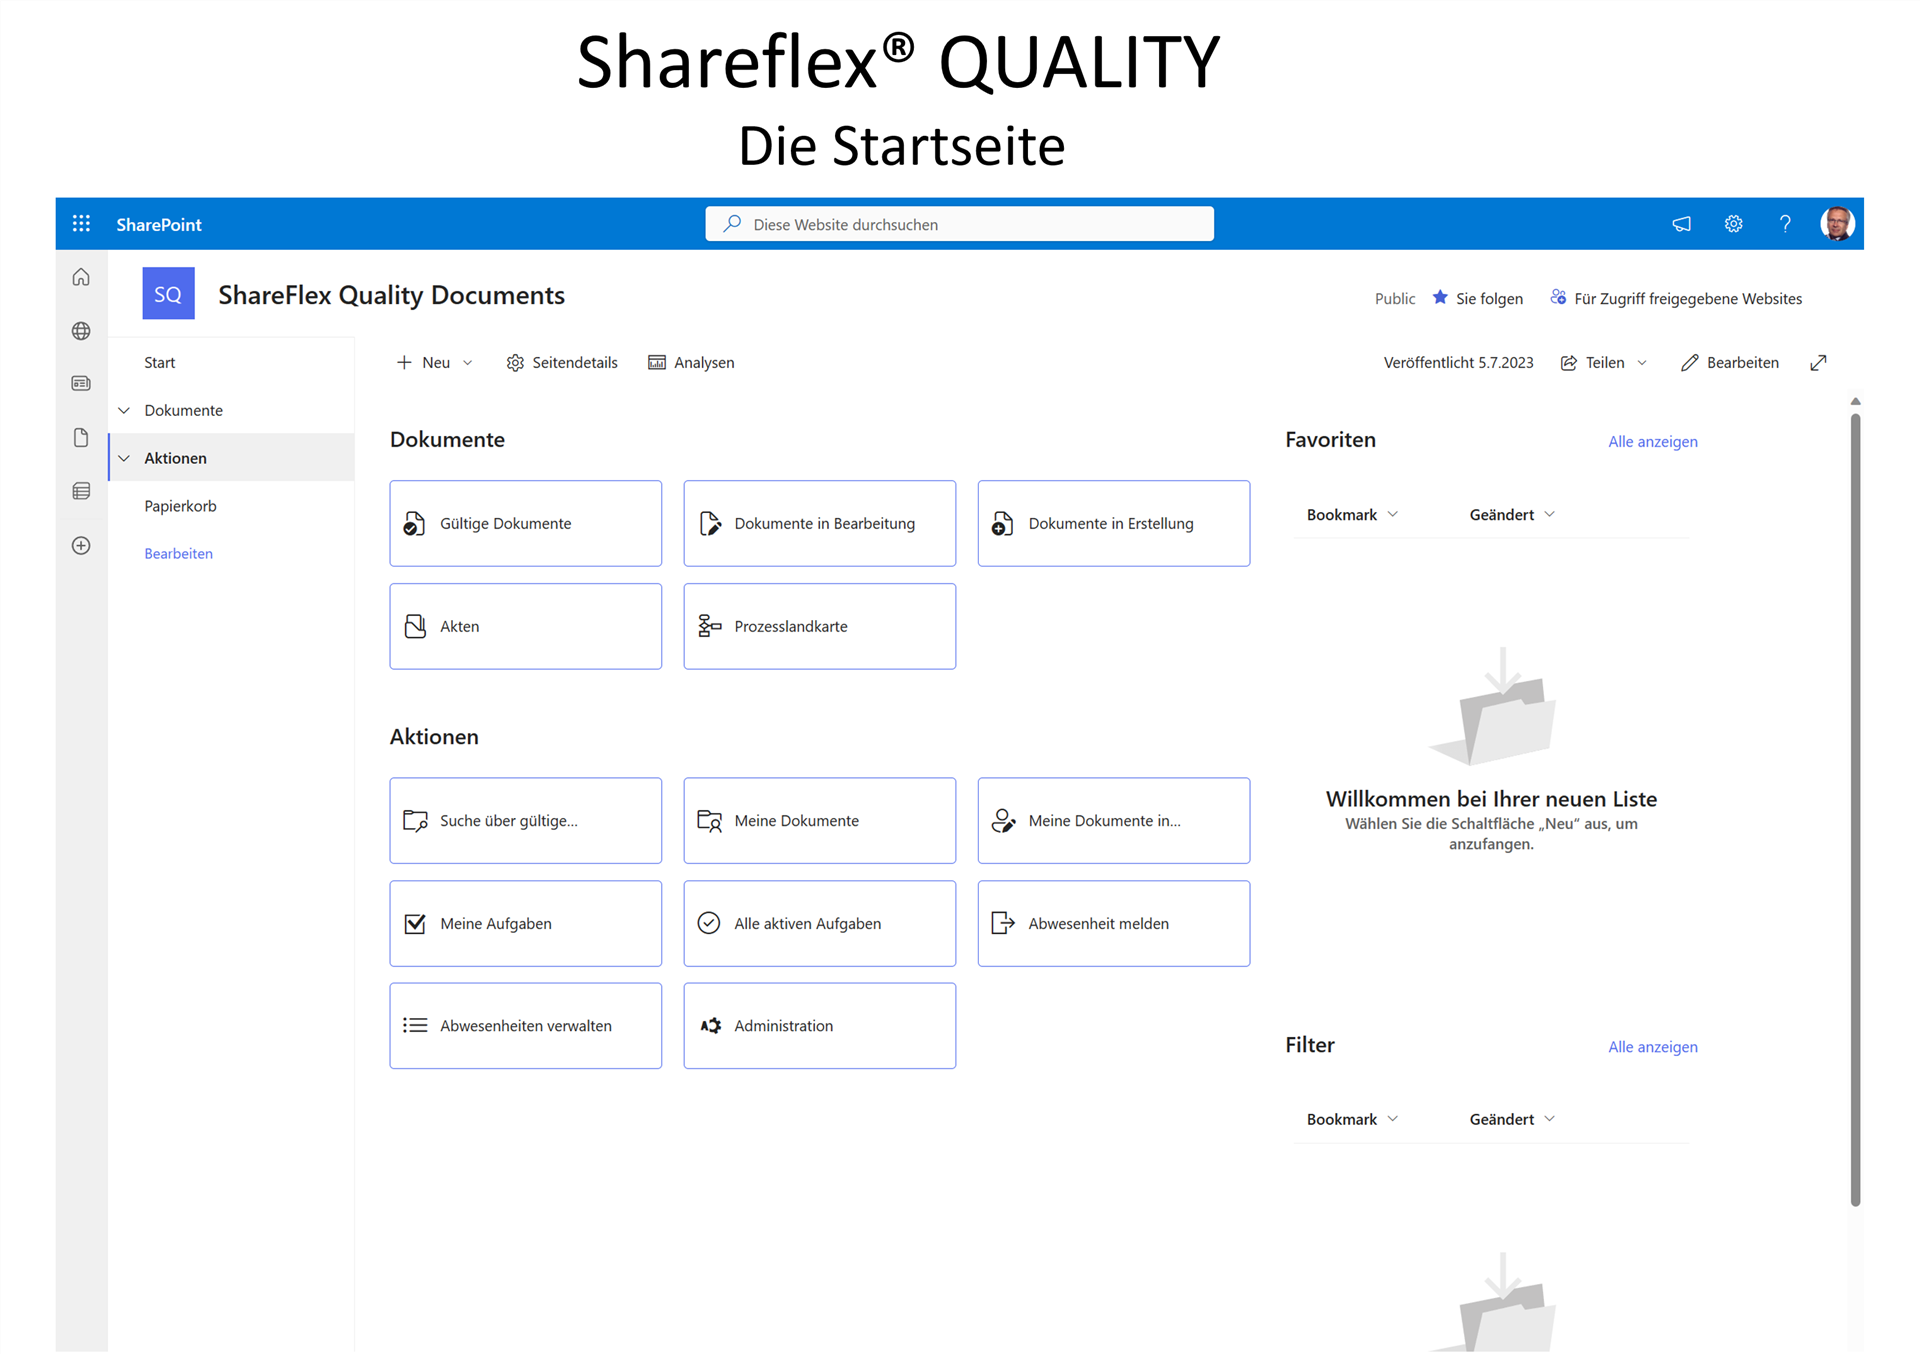 shareflex QUALITY DOCUMENTS